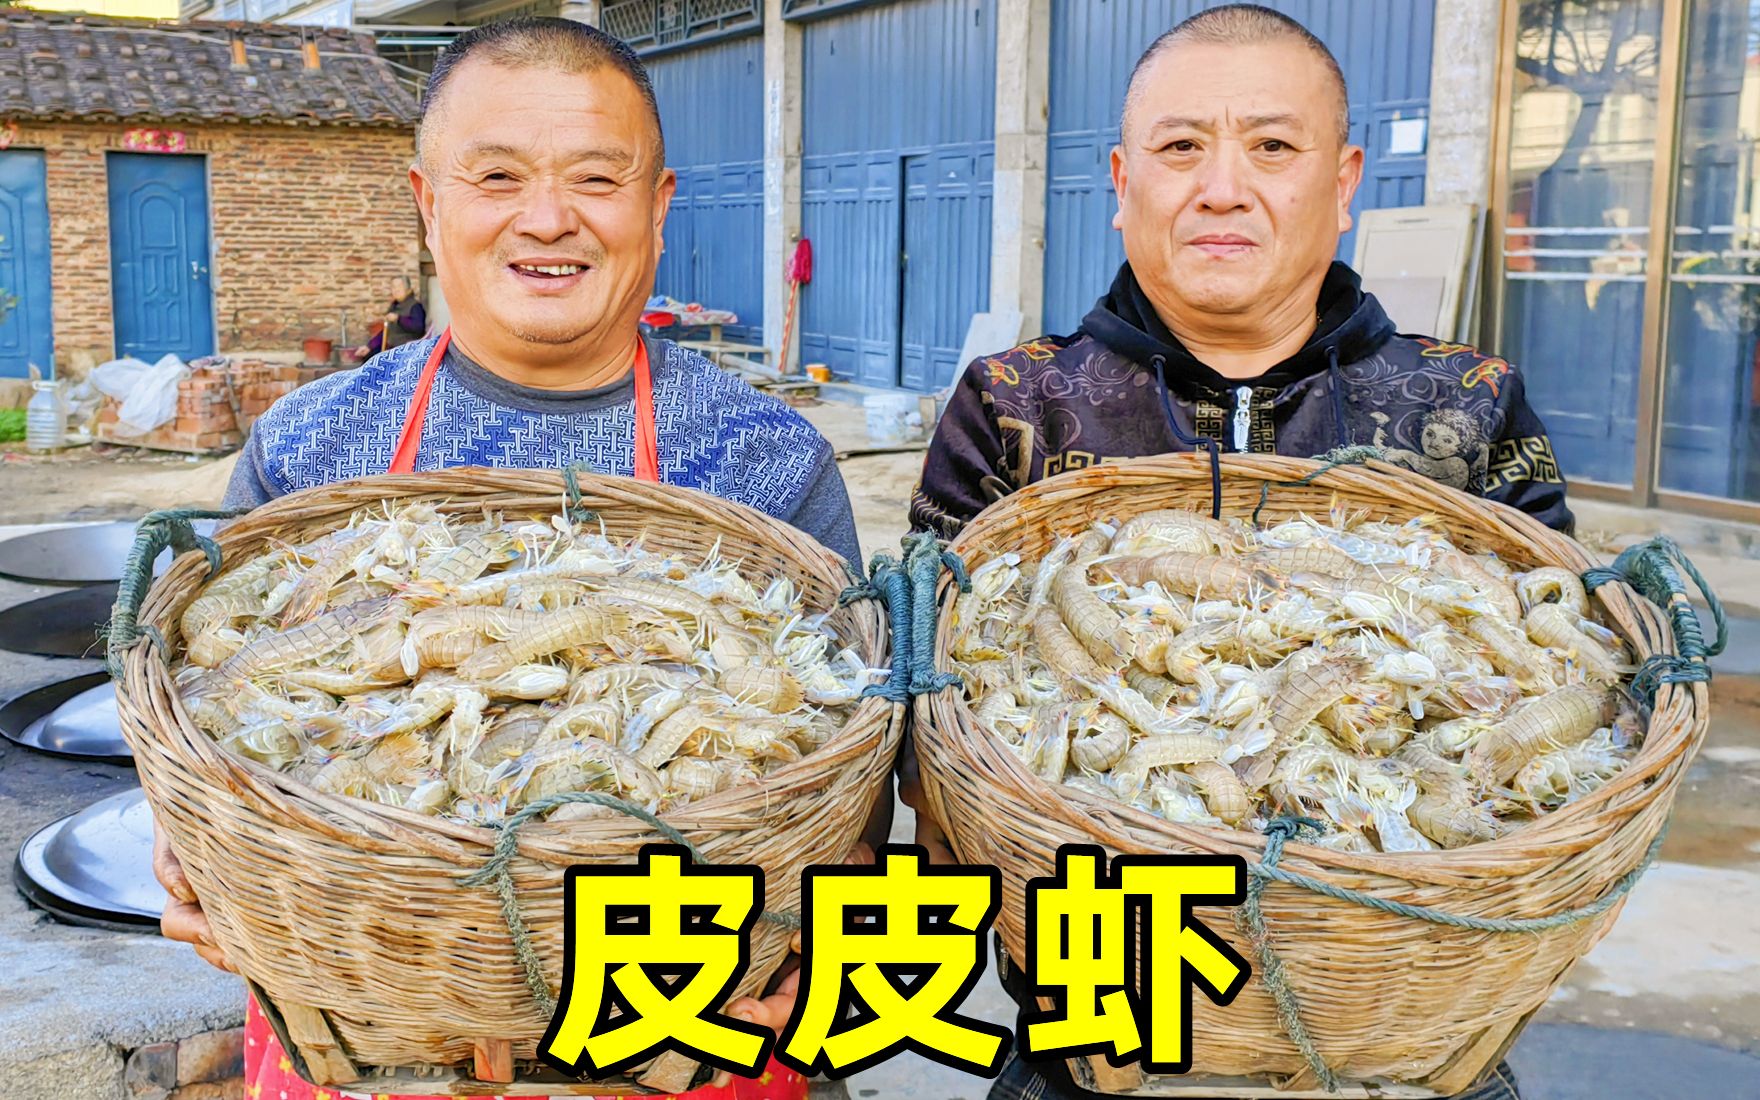 皮皮虾价格贱如土，阿胖山400元买了40斤，20多人皮皮虾当饭吃